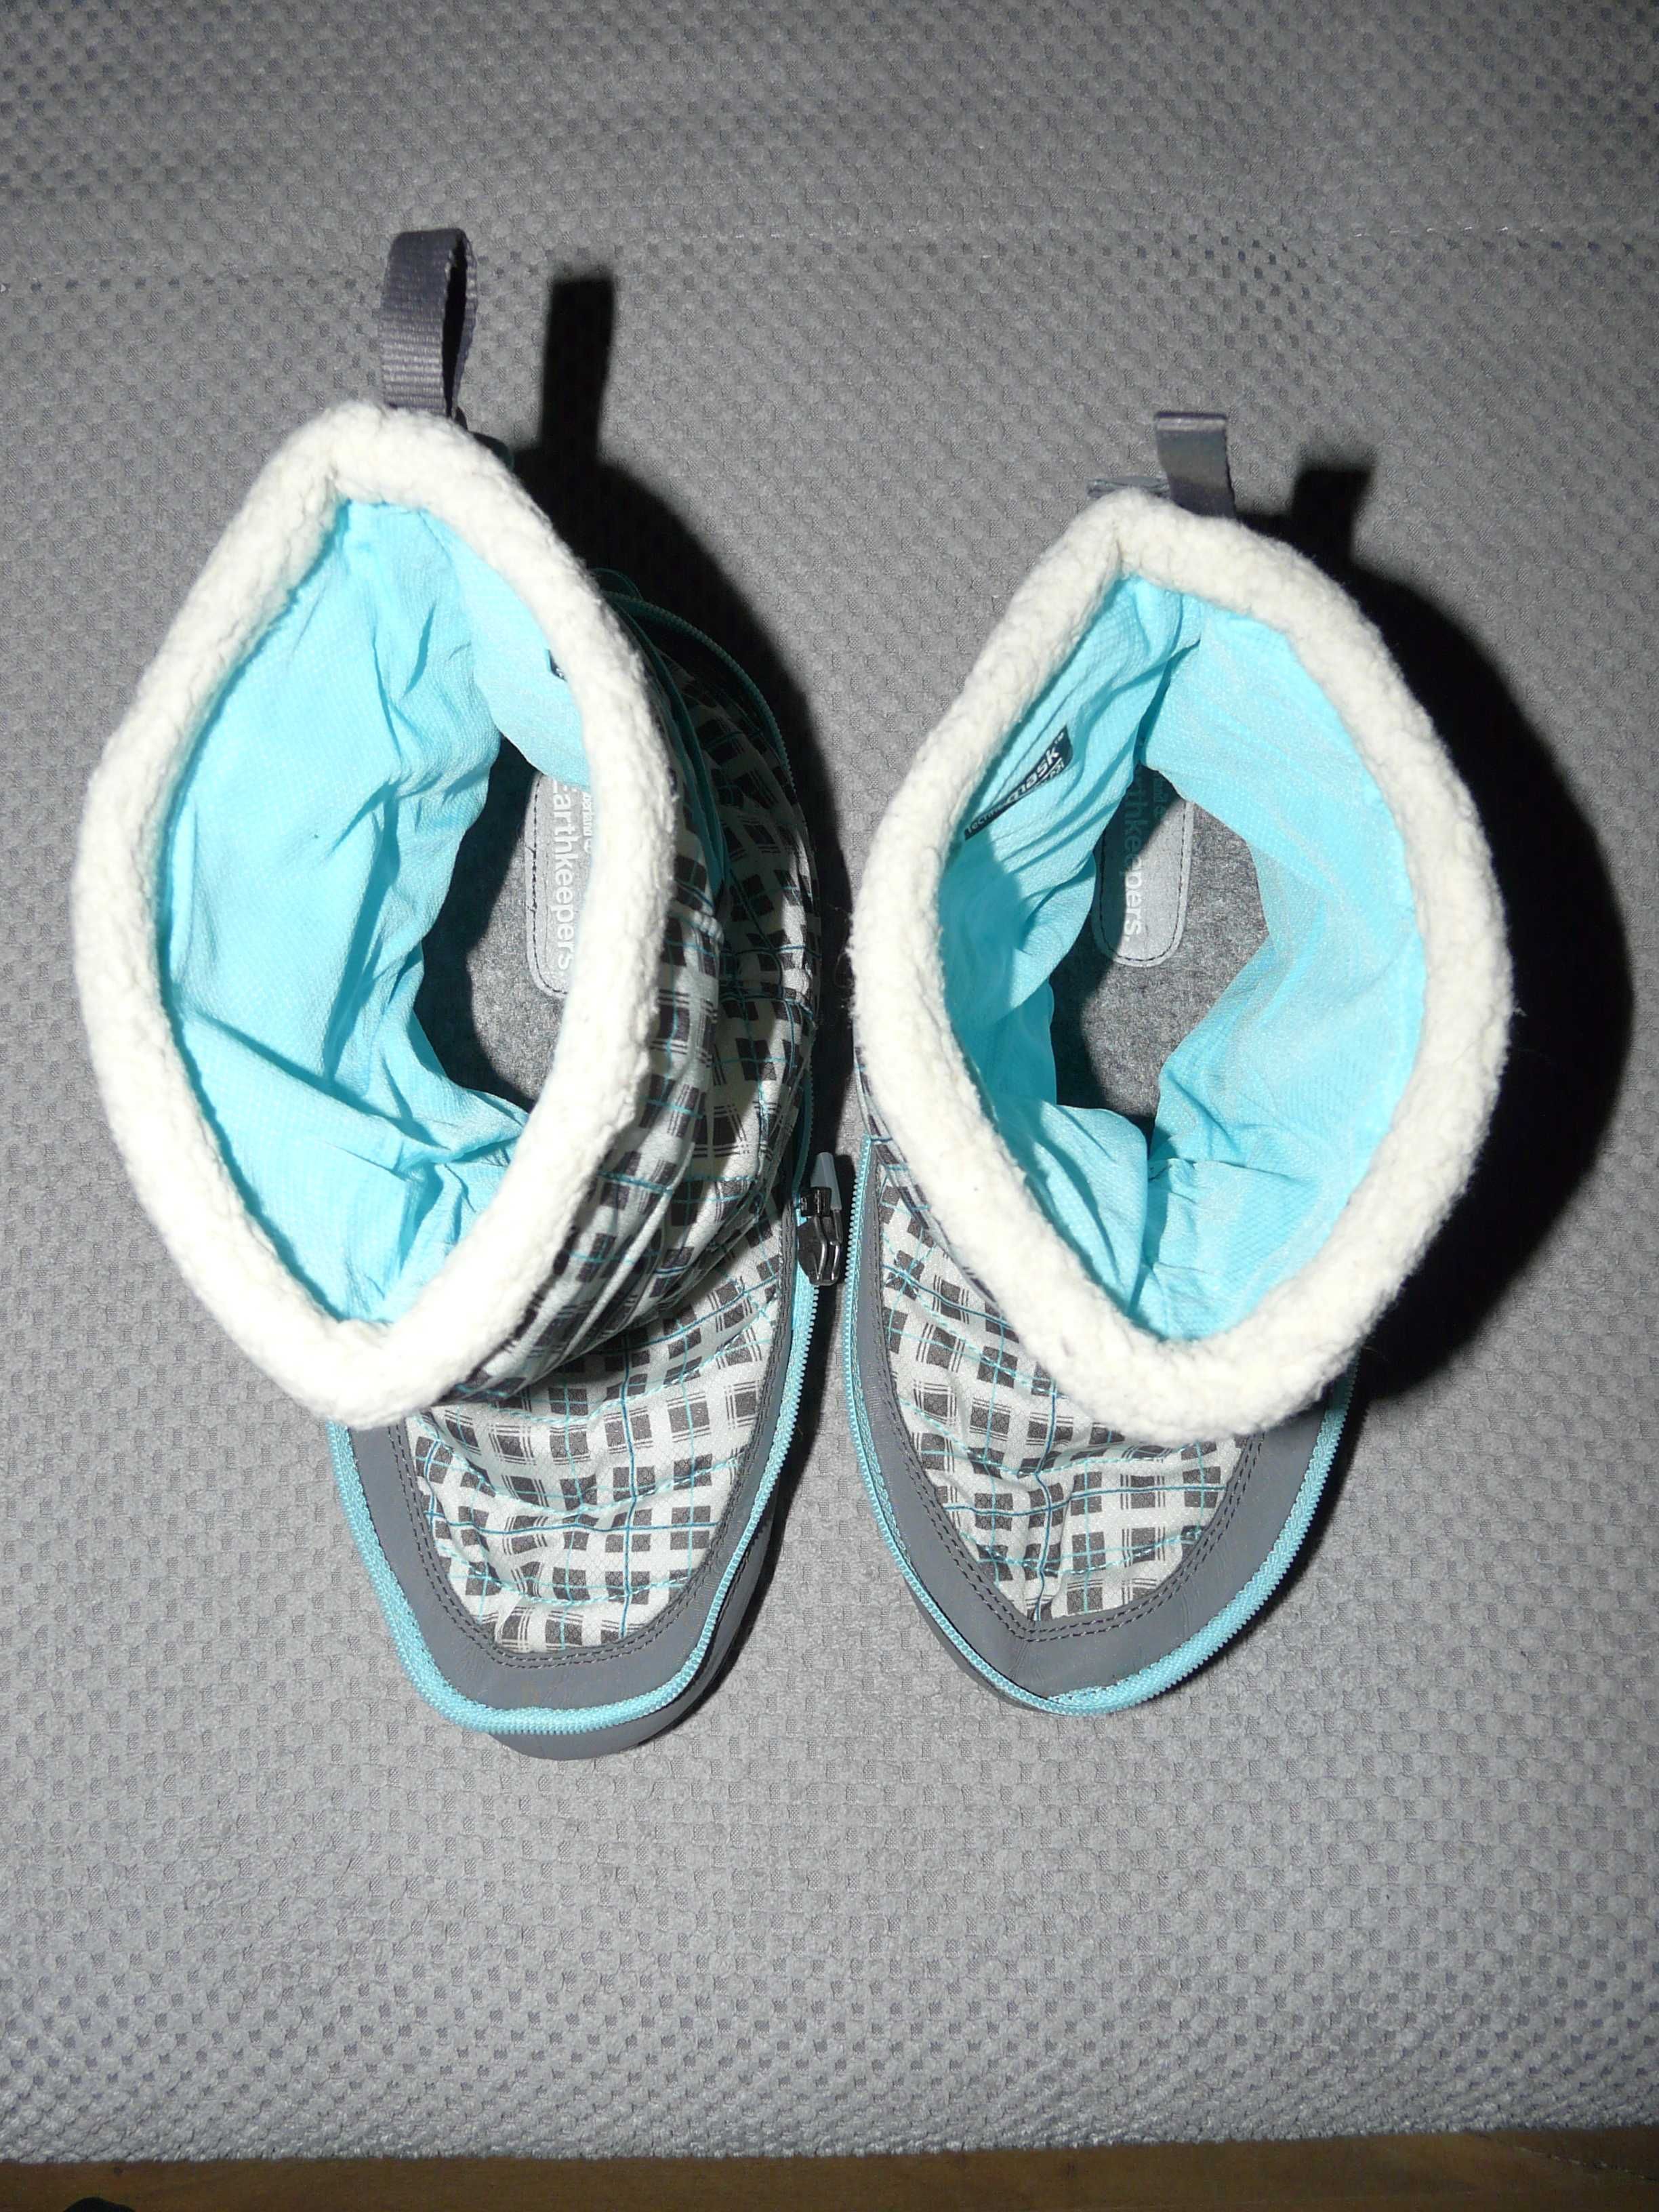 ECO buty zimowe Timberland 2w1 z recyklingu roz. 40 wkładka 26,5cm